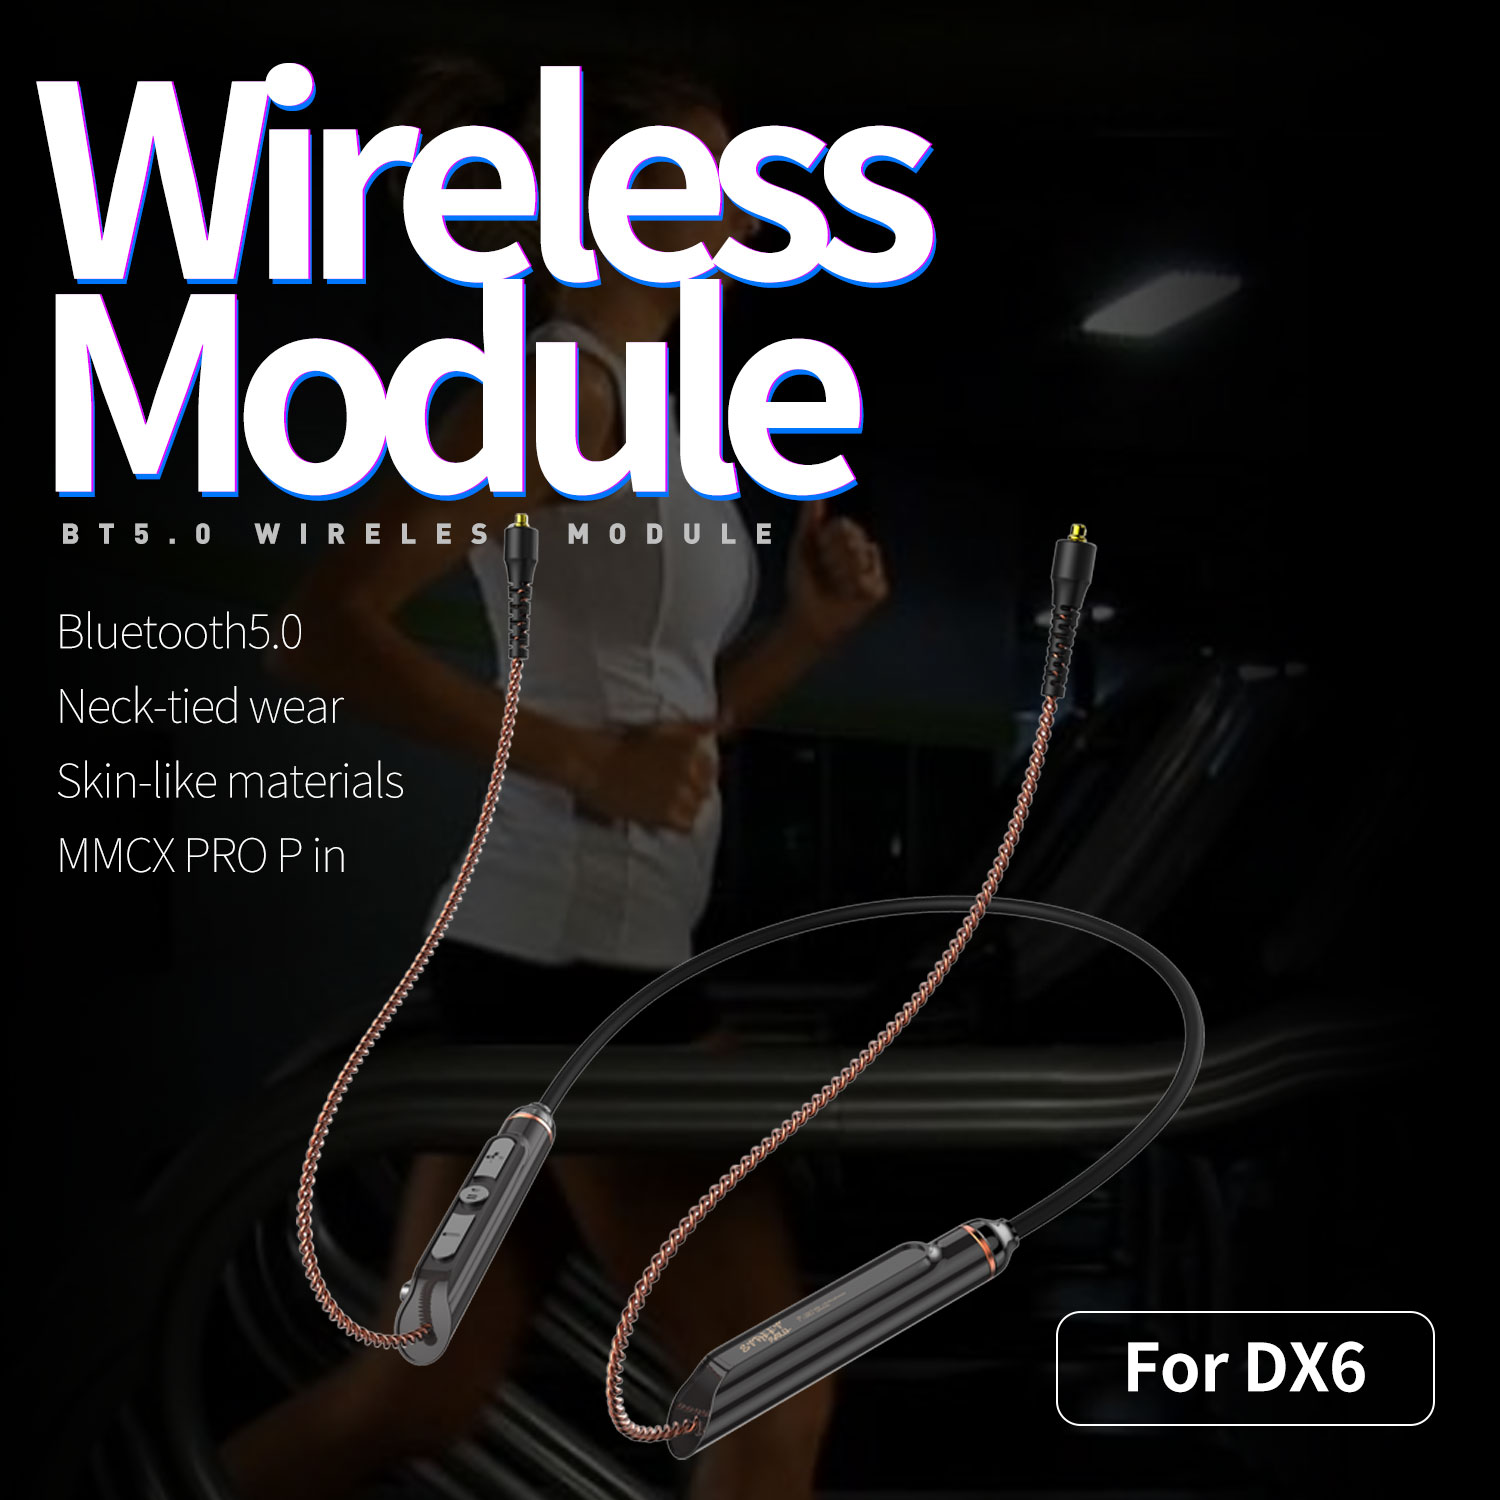 Tai nghe nhét tai Bluetooth 5.0 Gaming không dây chính hãng có Mic thiết kế hai bên tai phone đẹp, siêu nhỏ gọn, nghe nhạc tốt Plextone DX6 Earphone Head 3 Hybrid Driver sử dụng Socket MMCX có Module chuyển thành tai nghe có dây Type C và Jack 3.5mm.